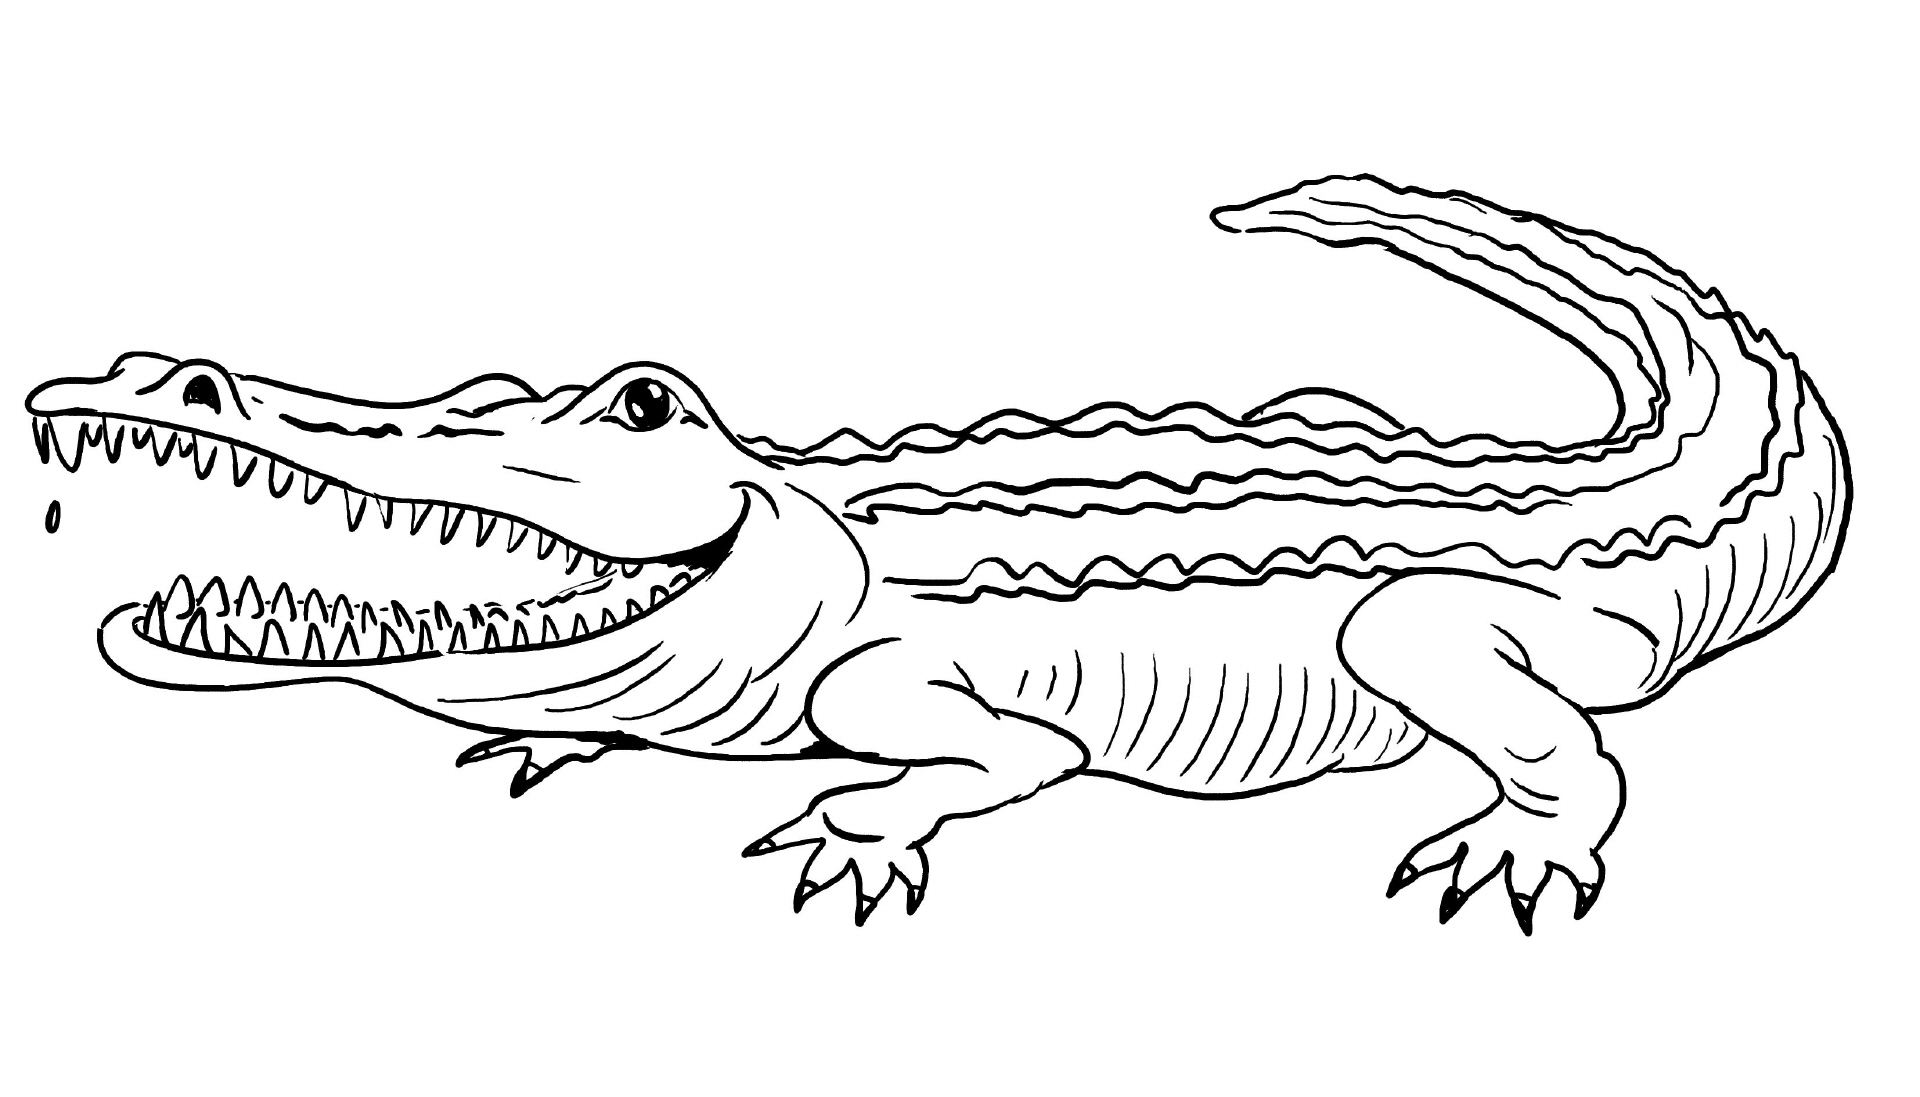 30 Krokodil Bilder Zum Ausmalen - Besten Bilder Von Ausmalbilder für Krokodil Ausmalbilder Ausdrucken